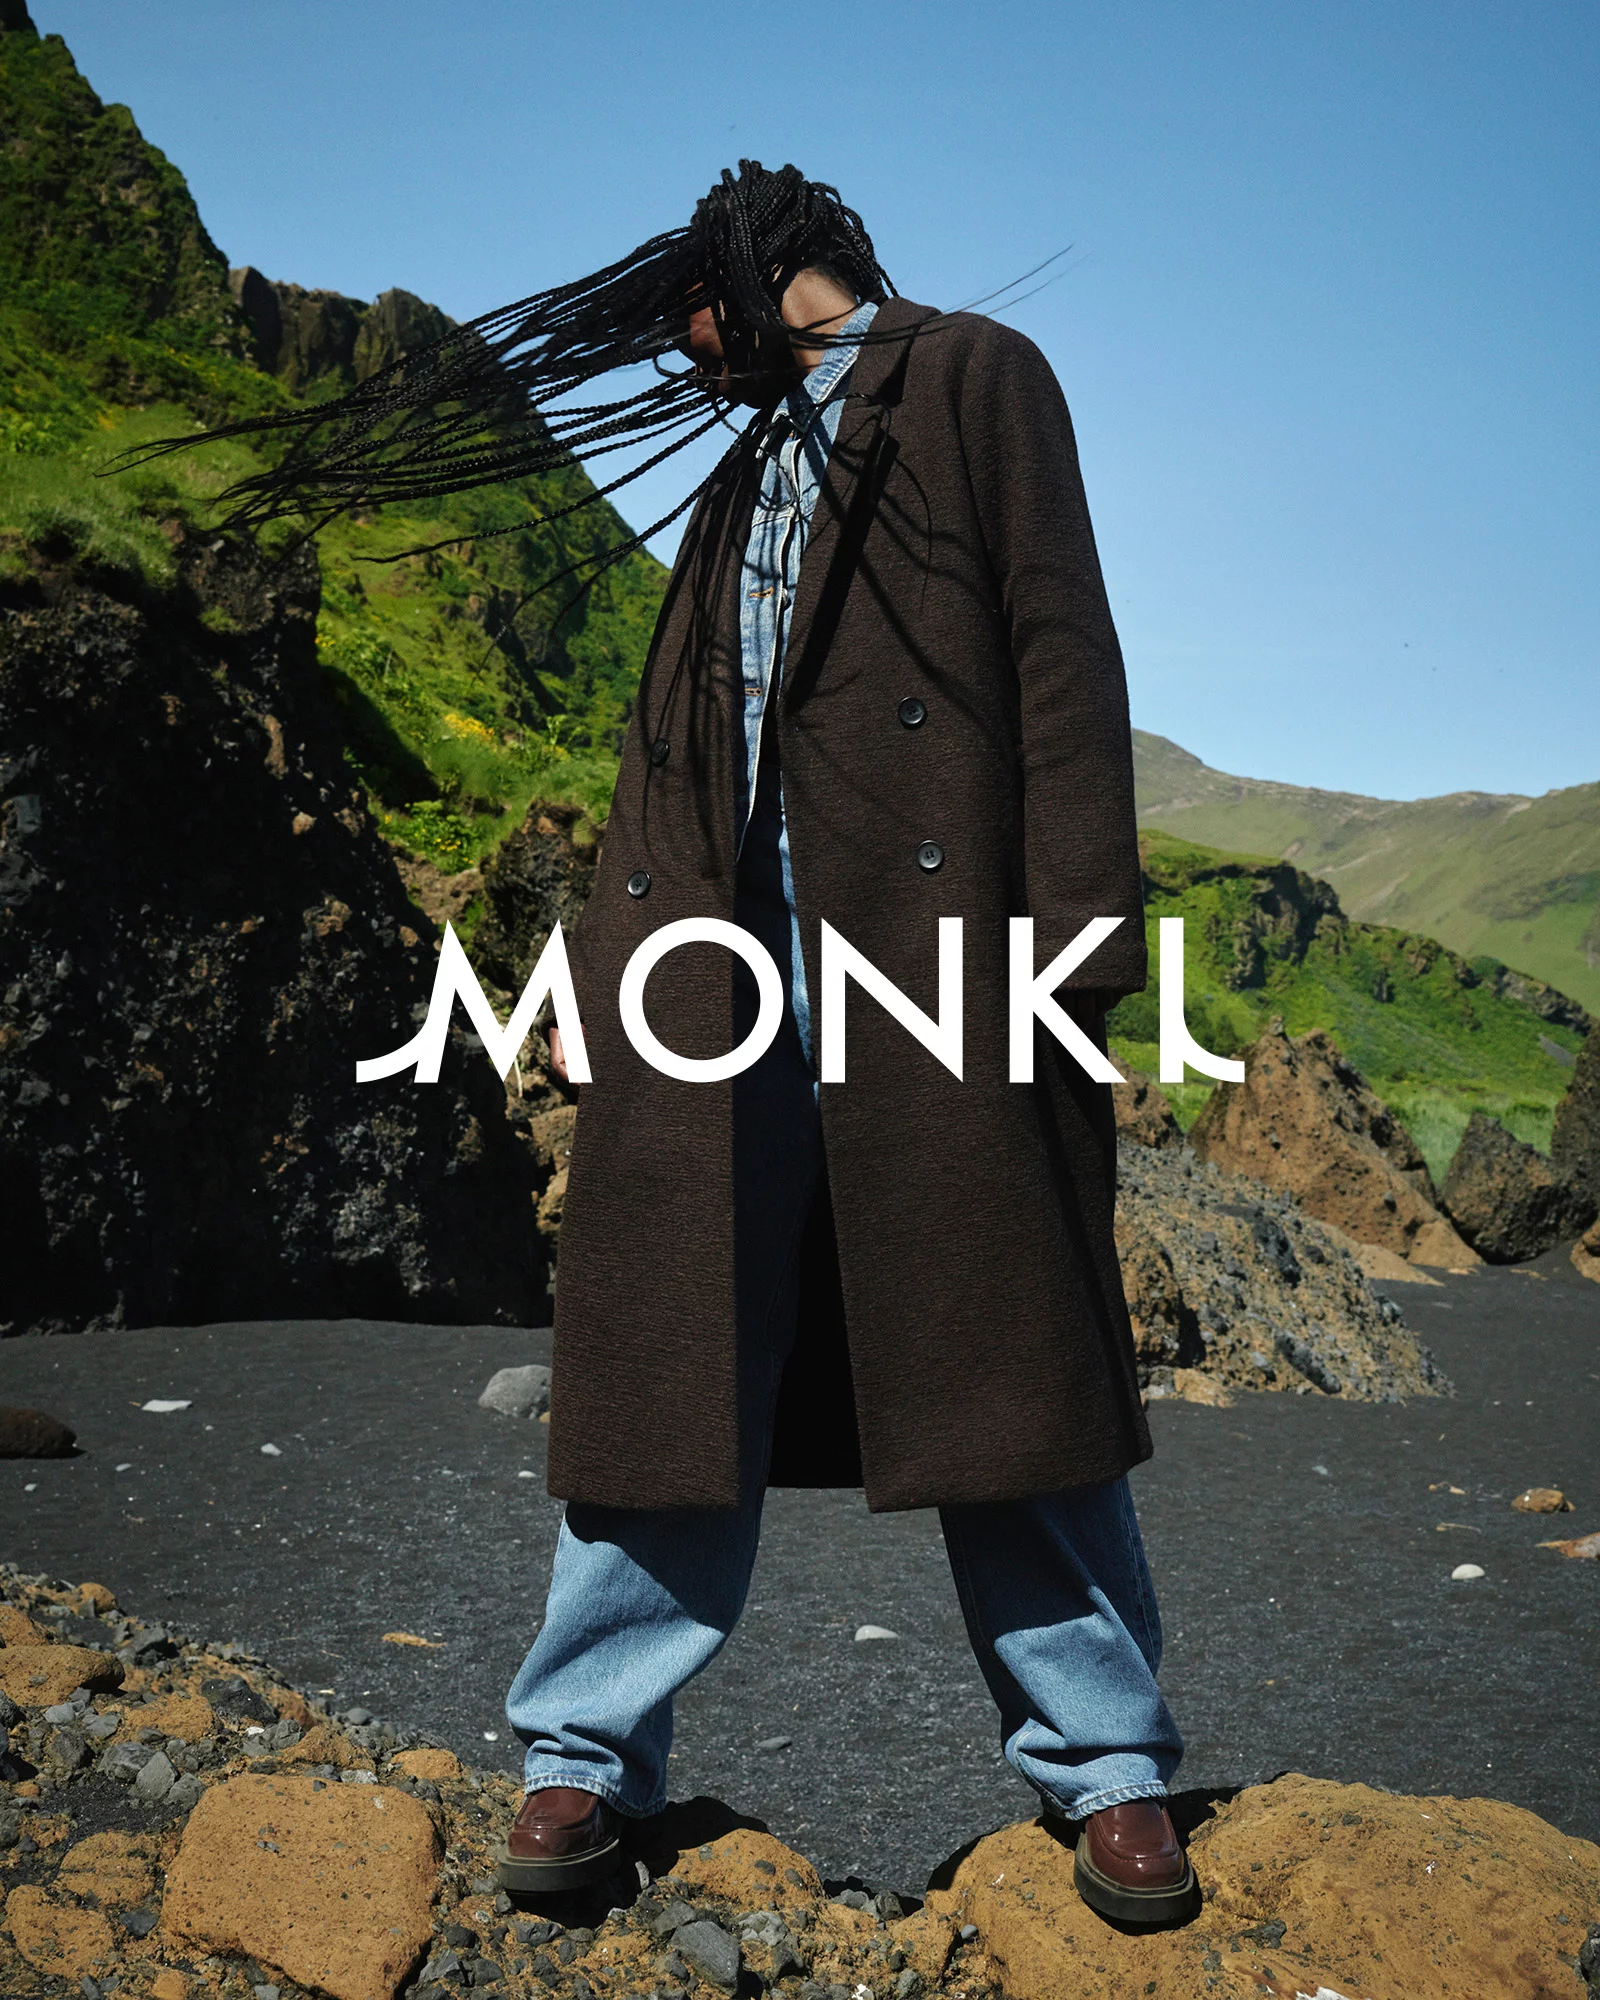 MONKI 3 by Tobias LUNDKVIST